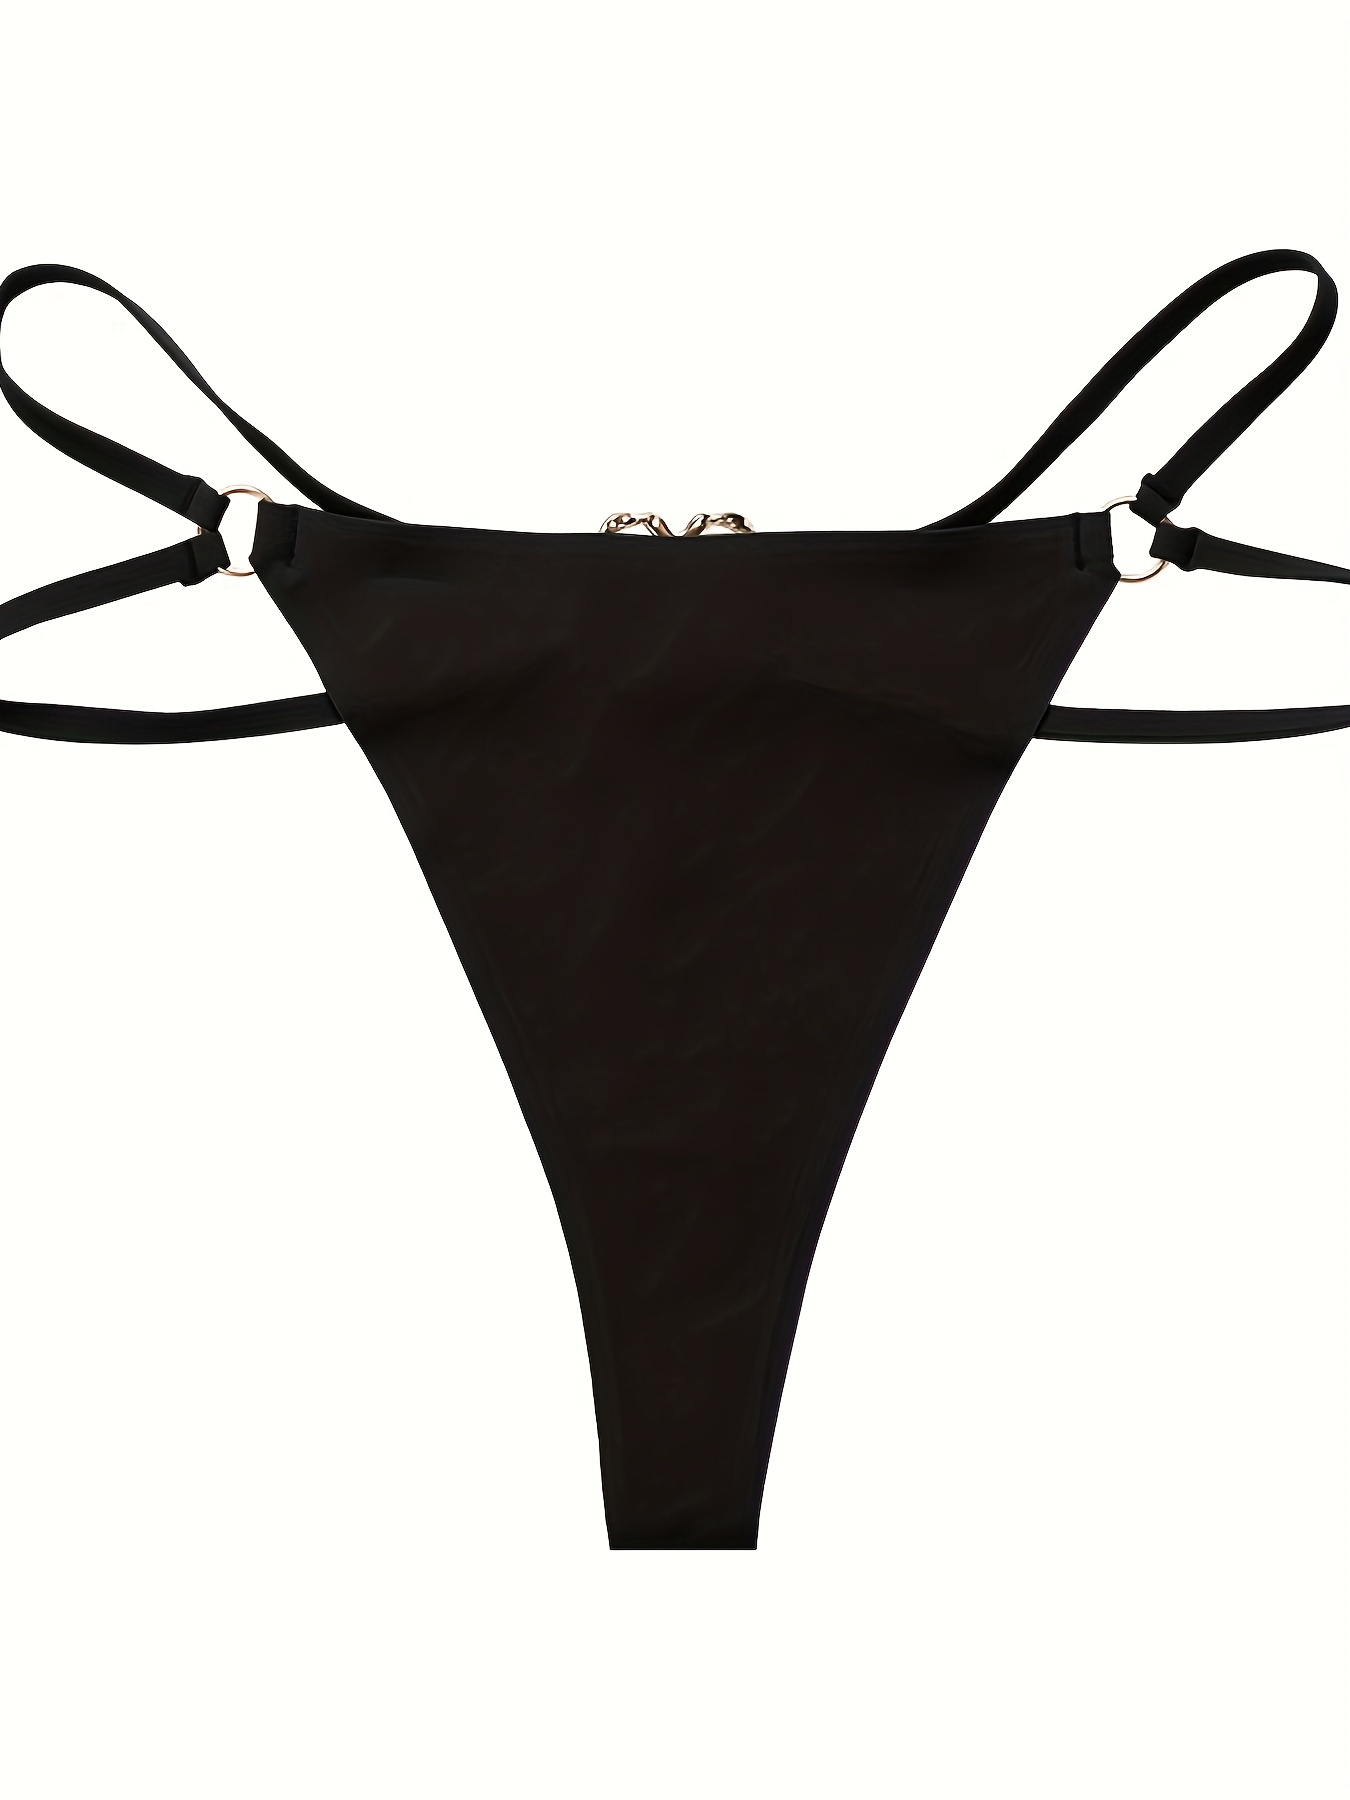 Buy Overdose Women Lingerie Set Sexy Baby Sports Bra + Underwear Online at  desertcartSeychelles